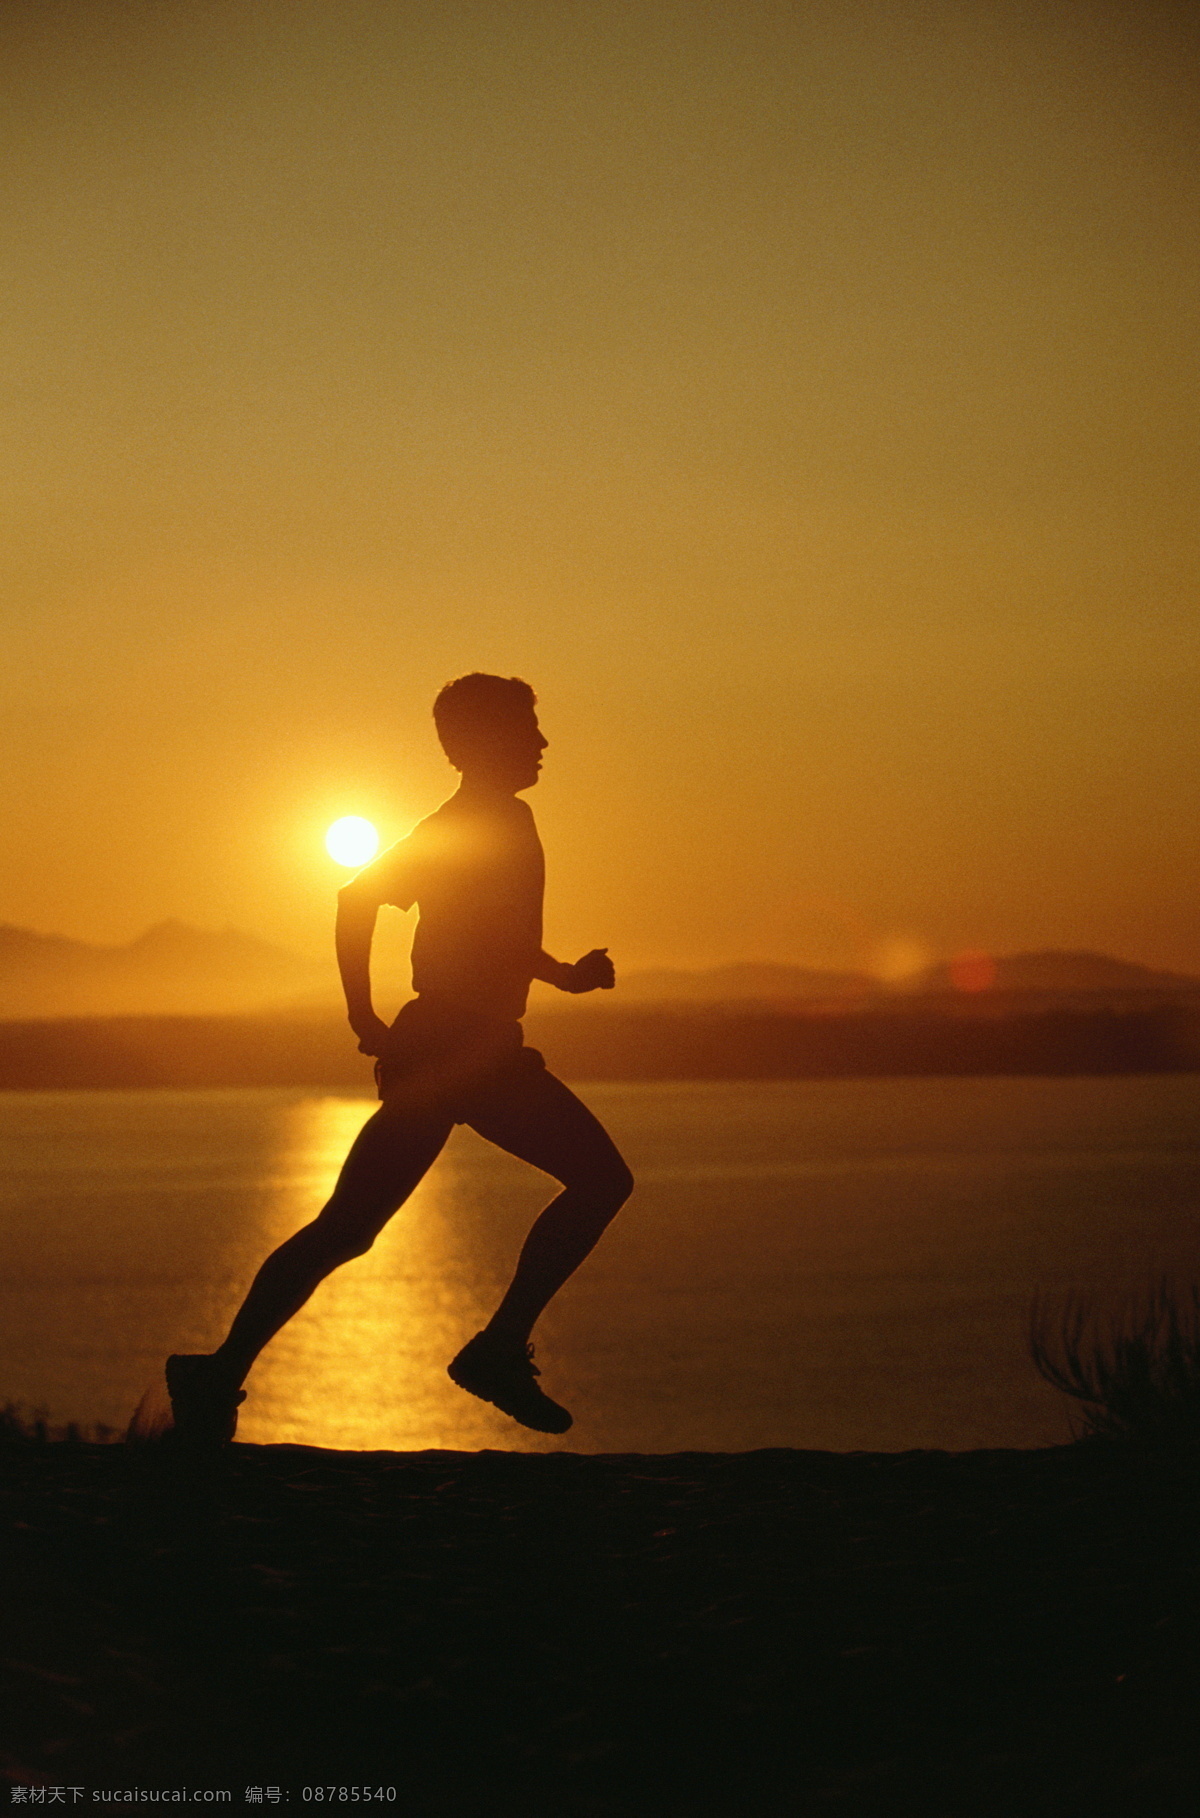 跑步 小跑 奔跑 赛跑 晨跑 快步 疾行 急行 疾步 急步 健身运动 黄昏 夕阳 清晨 早晨 体育运动 文化艺术